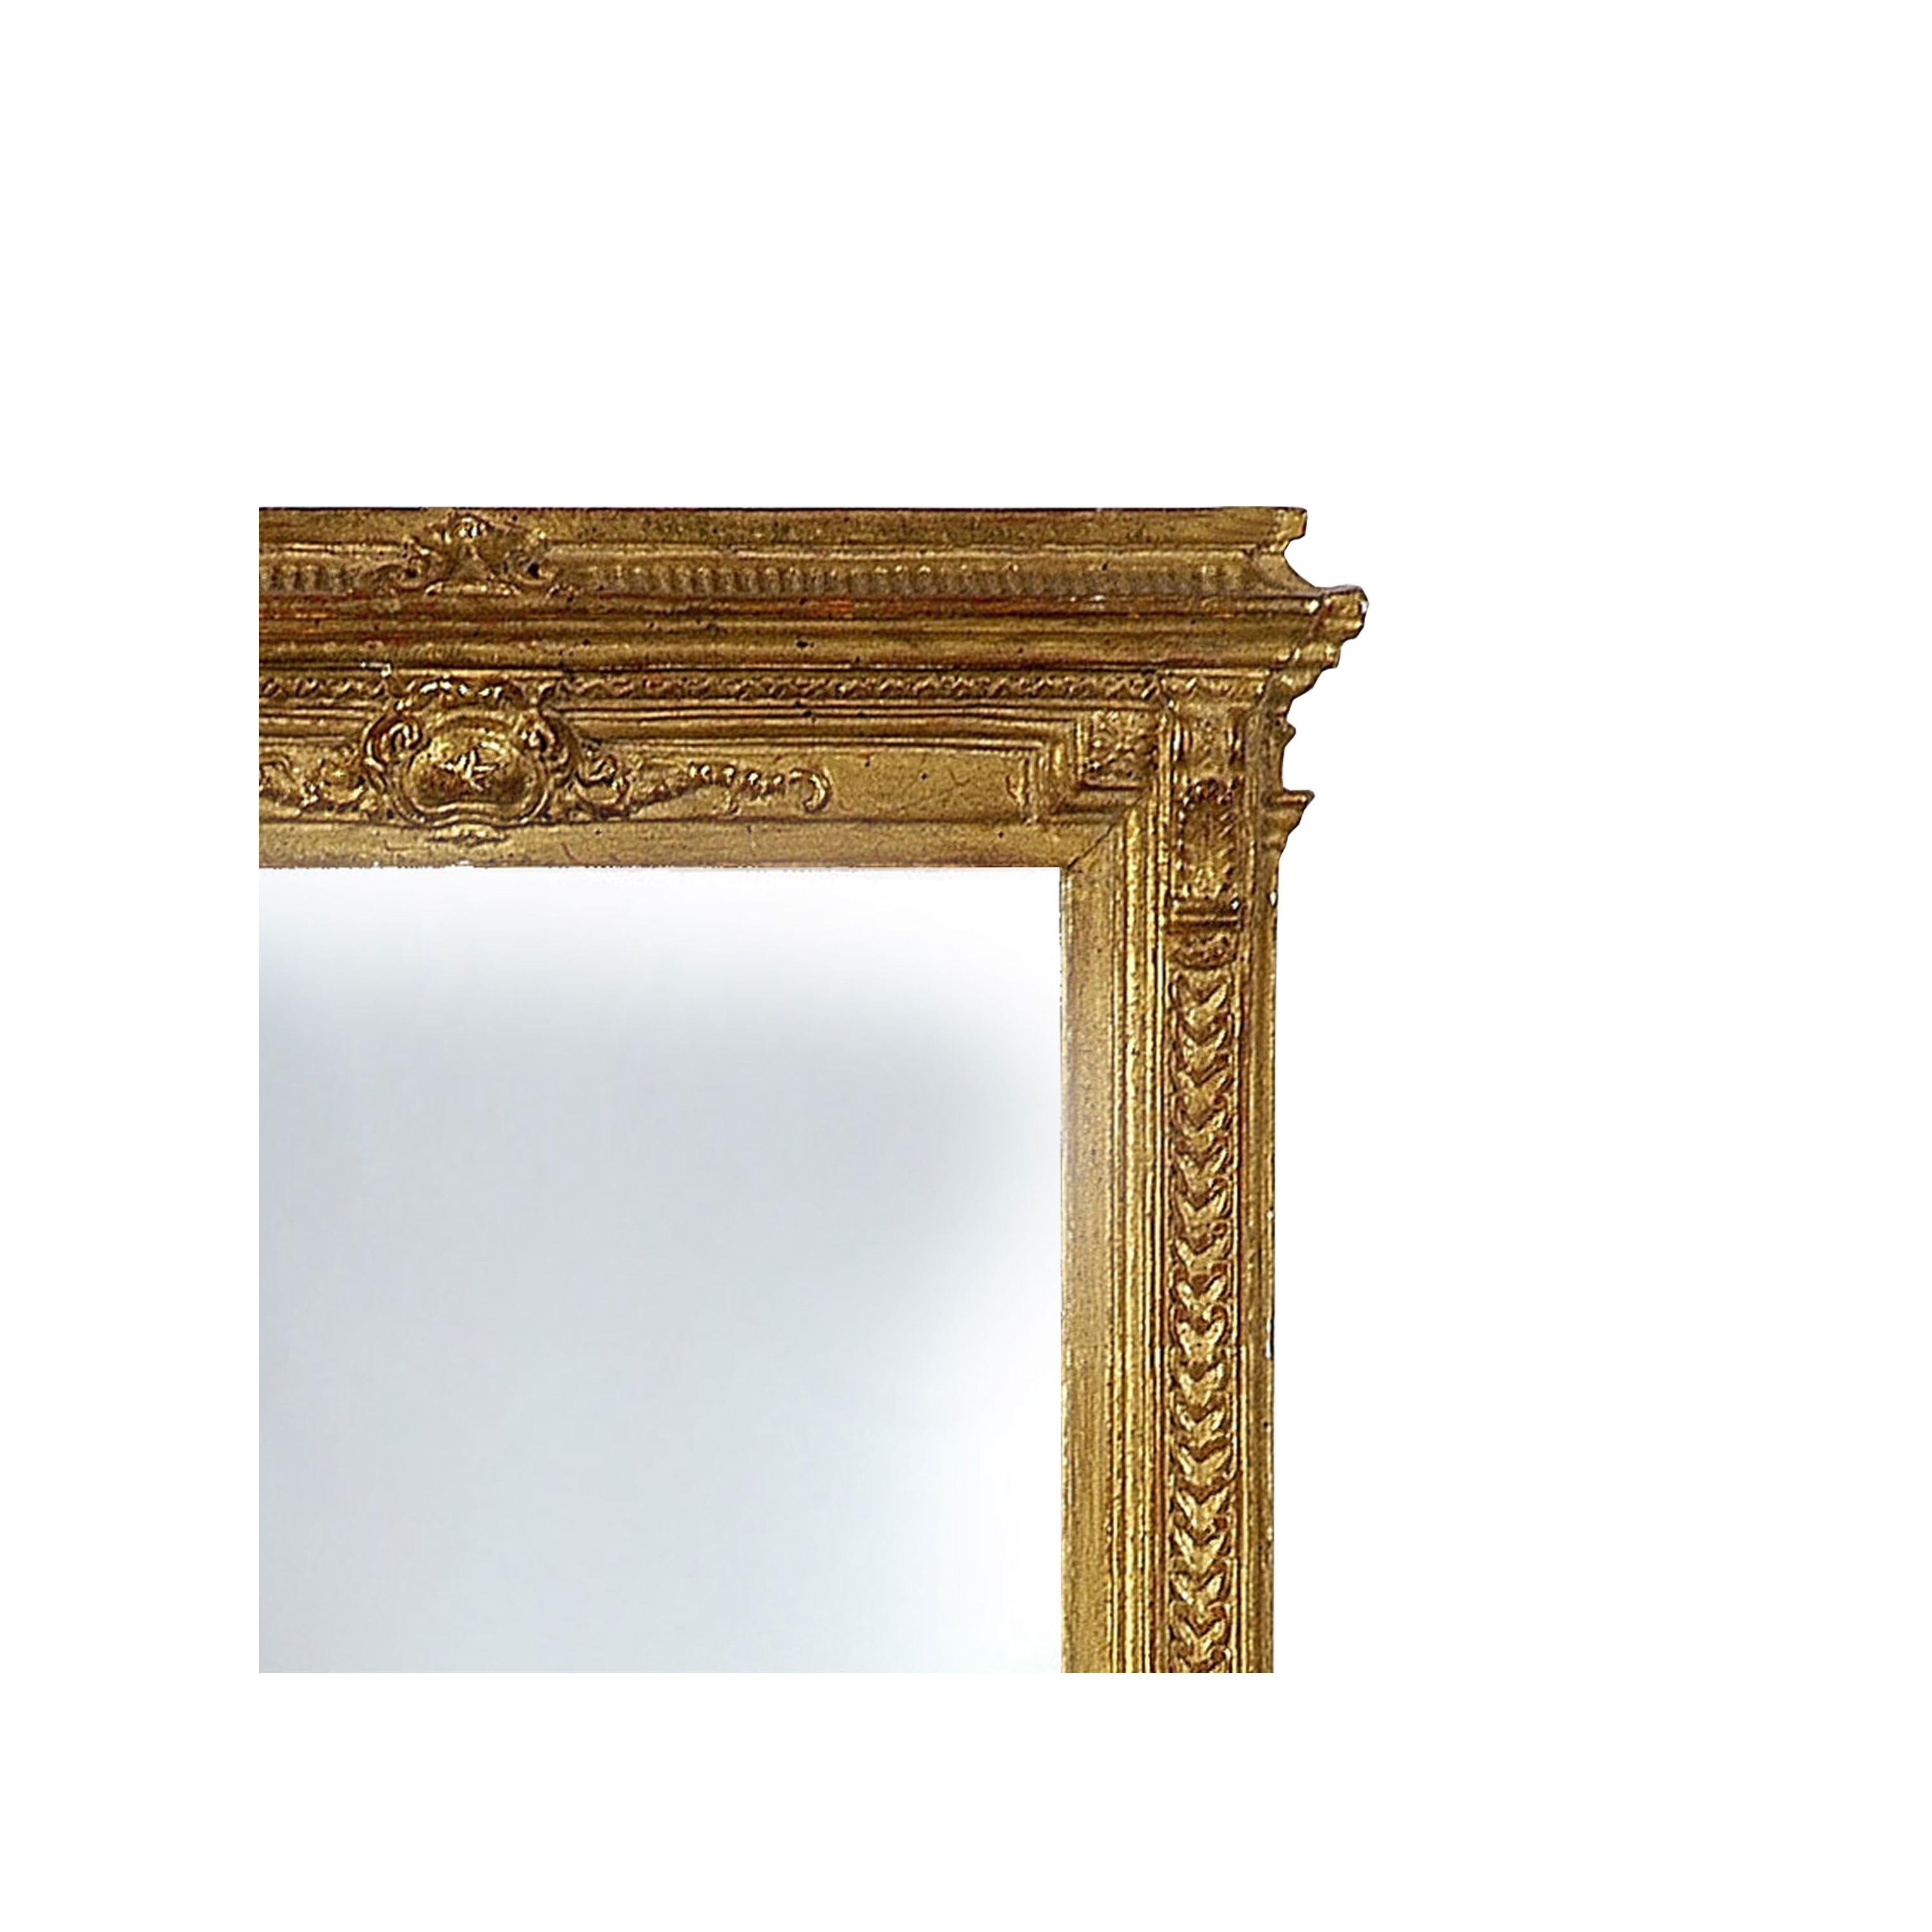 Miroir artisanal de style Empire néoclassique. Structure rectangulaire en bois sculpté à la main avec finition en feuille d'or. Espagne, 1970.